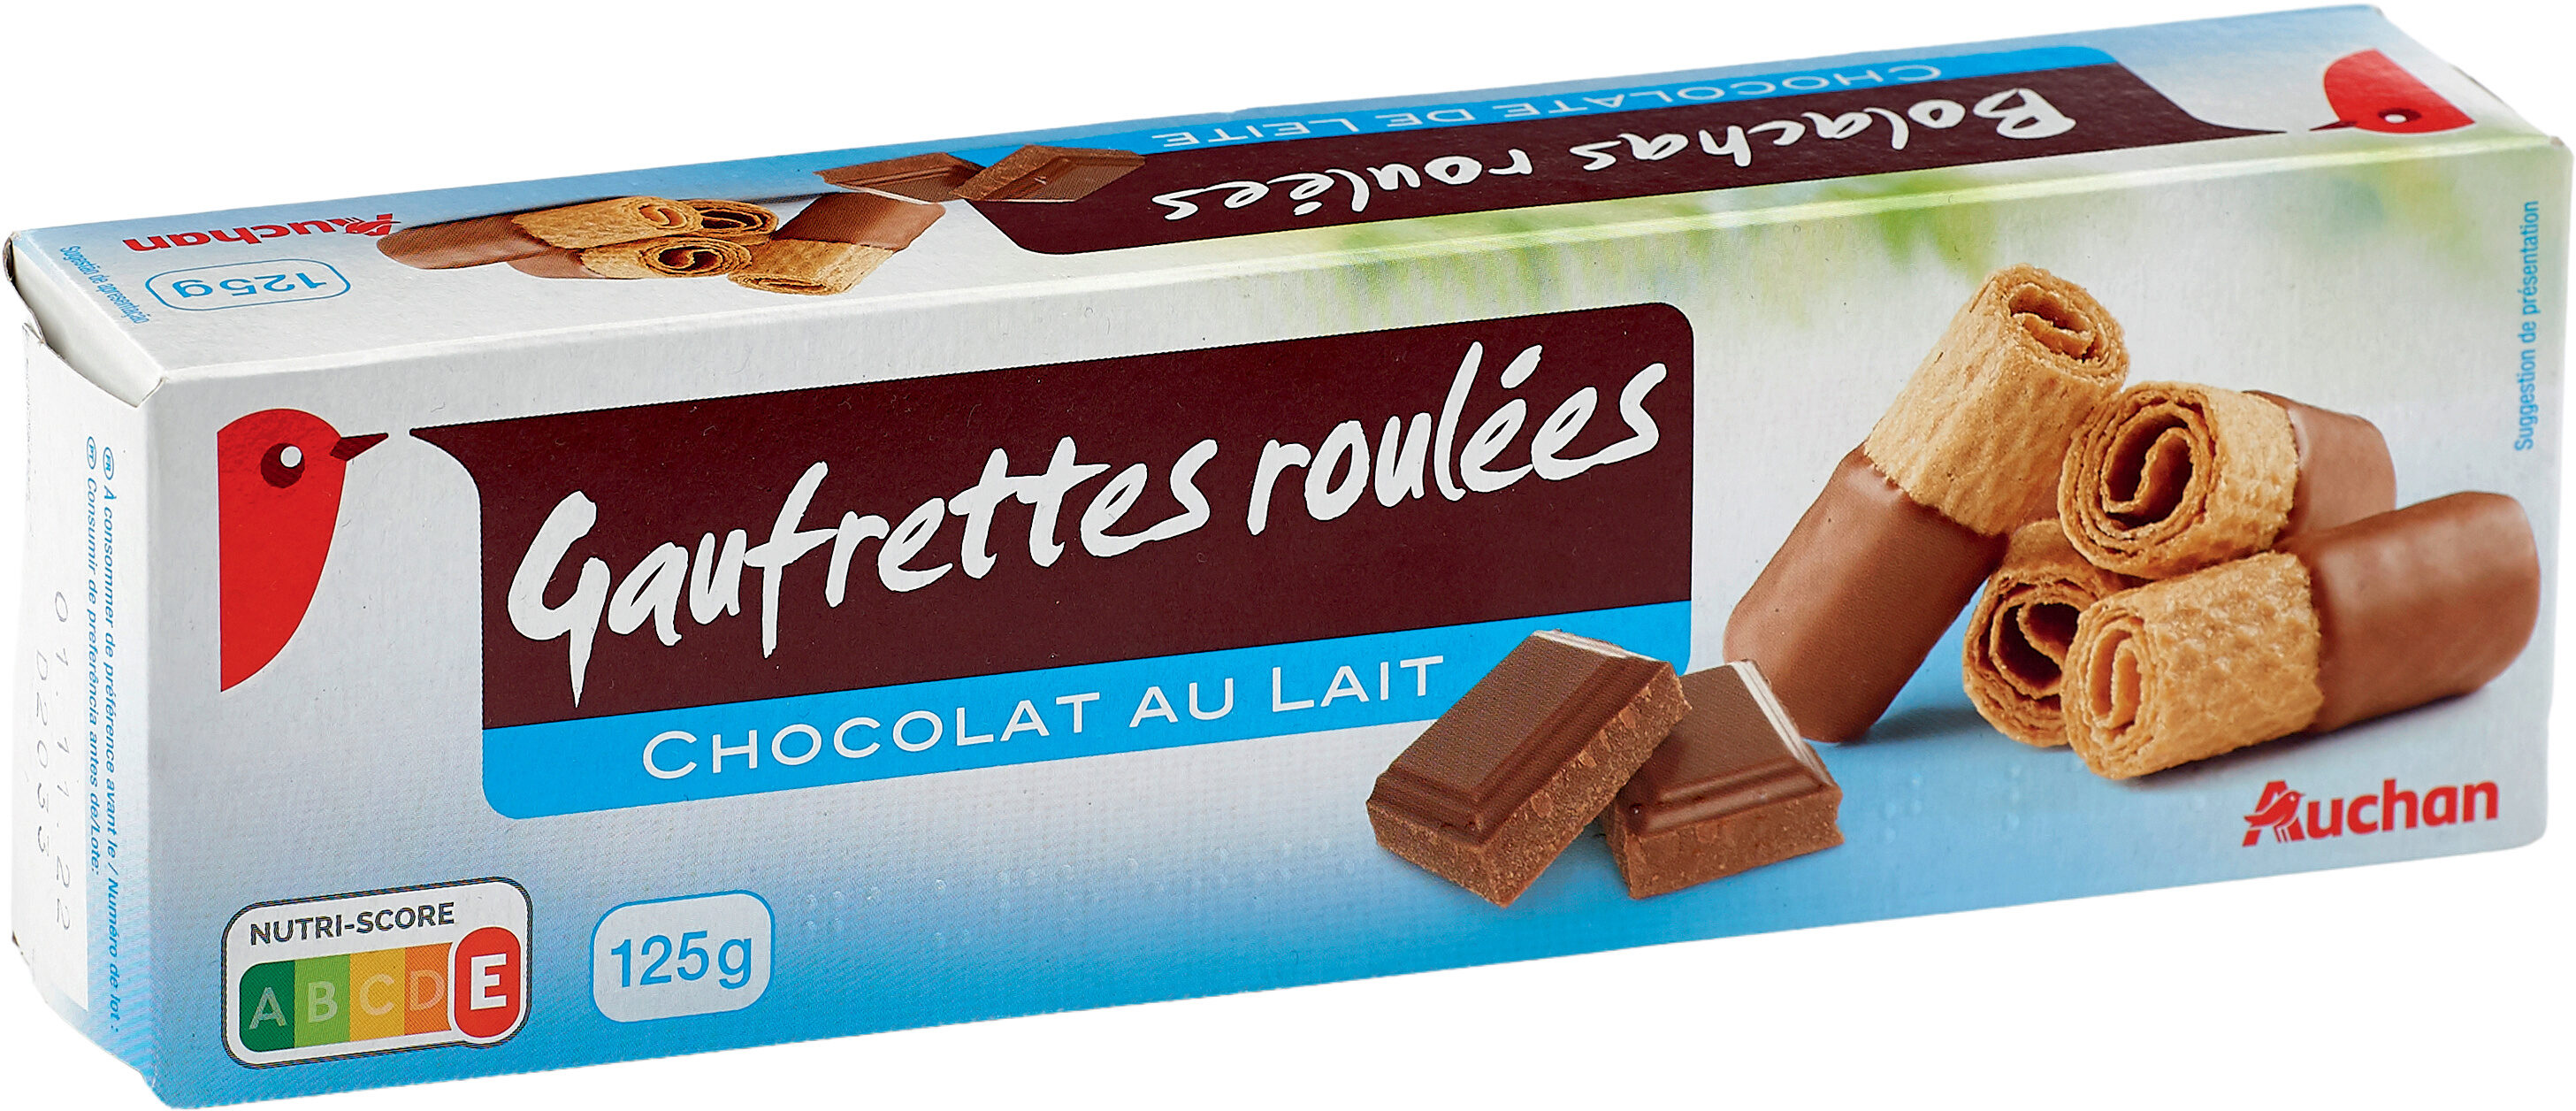 Gaufrettes roulées chocolat au lait - Product - fr